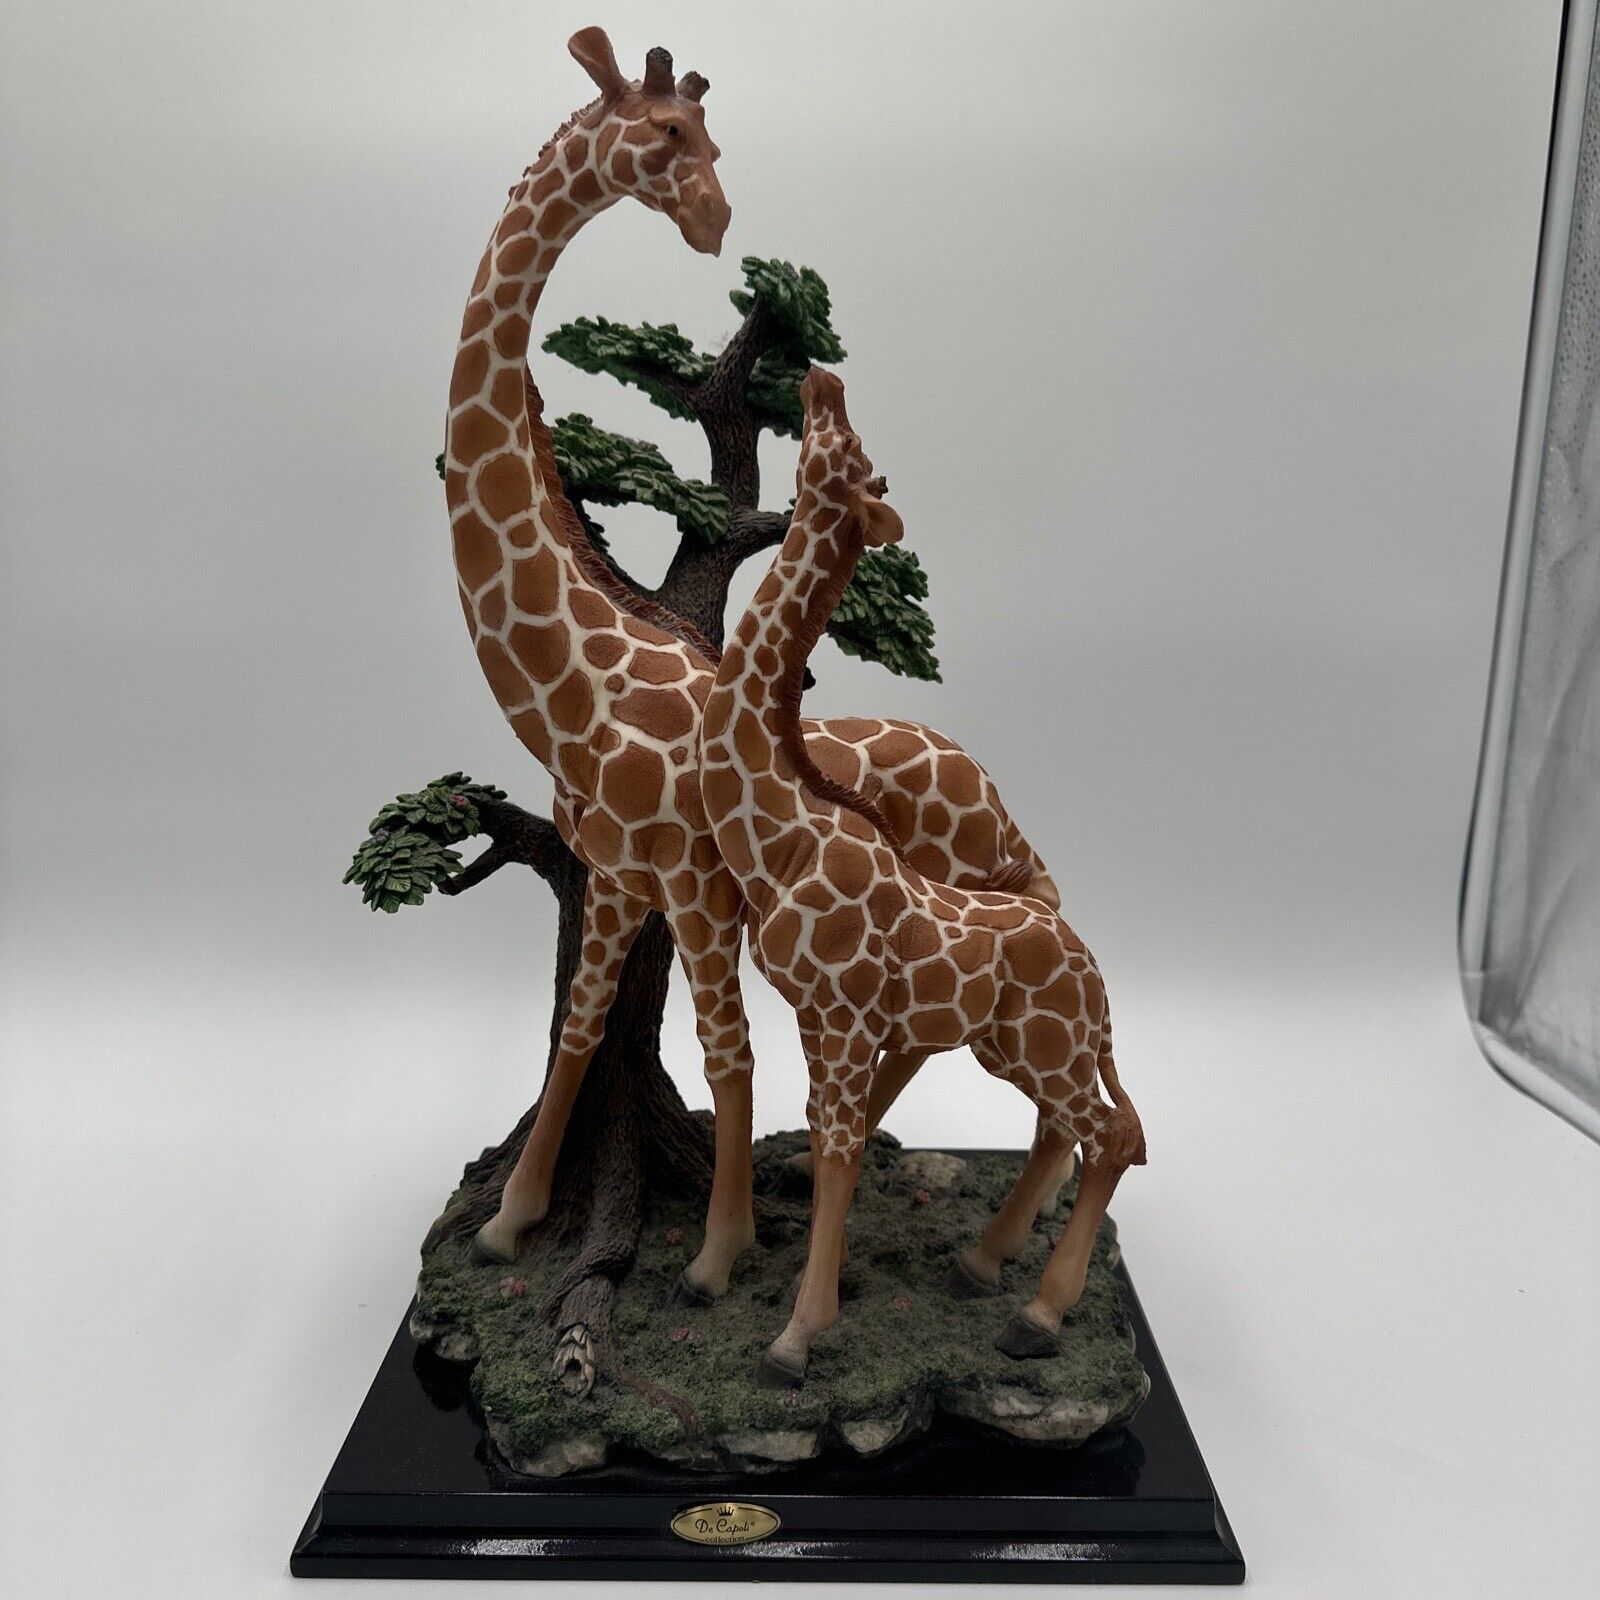 Vintage De Capoli Collection Giraffe Figurines Near Tree. Beautiful Design 17”